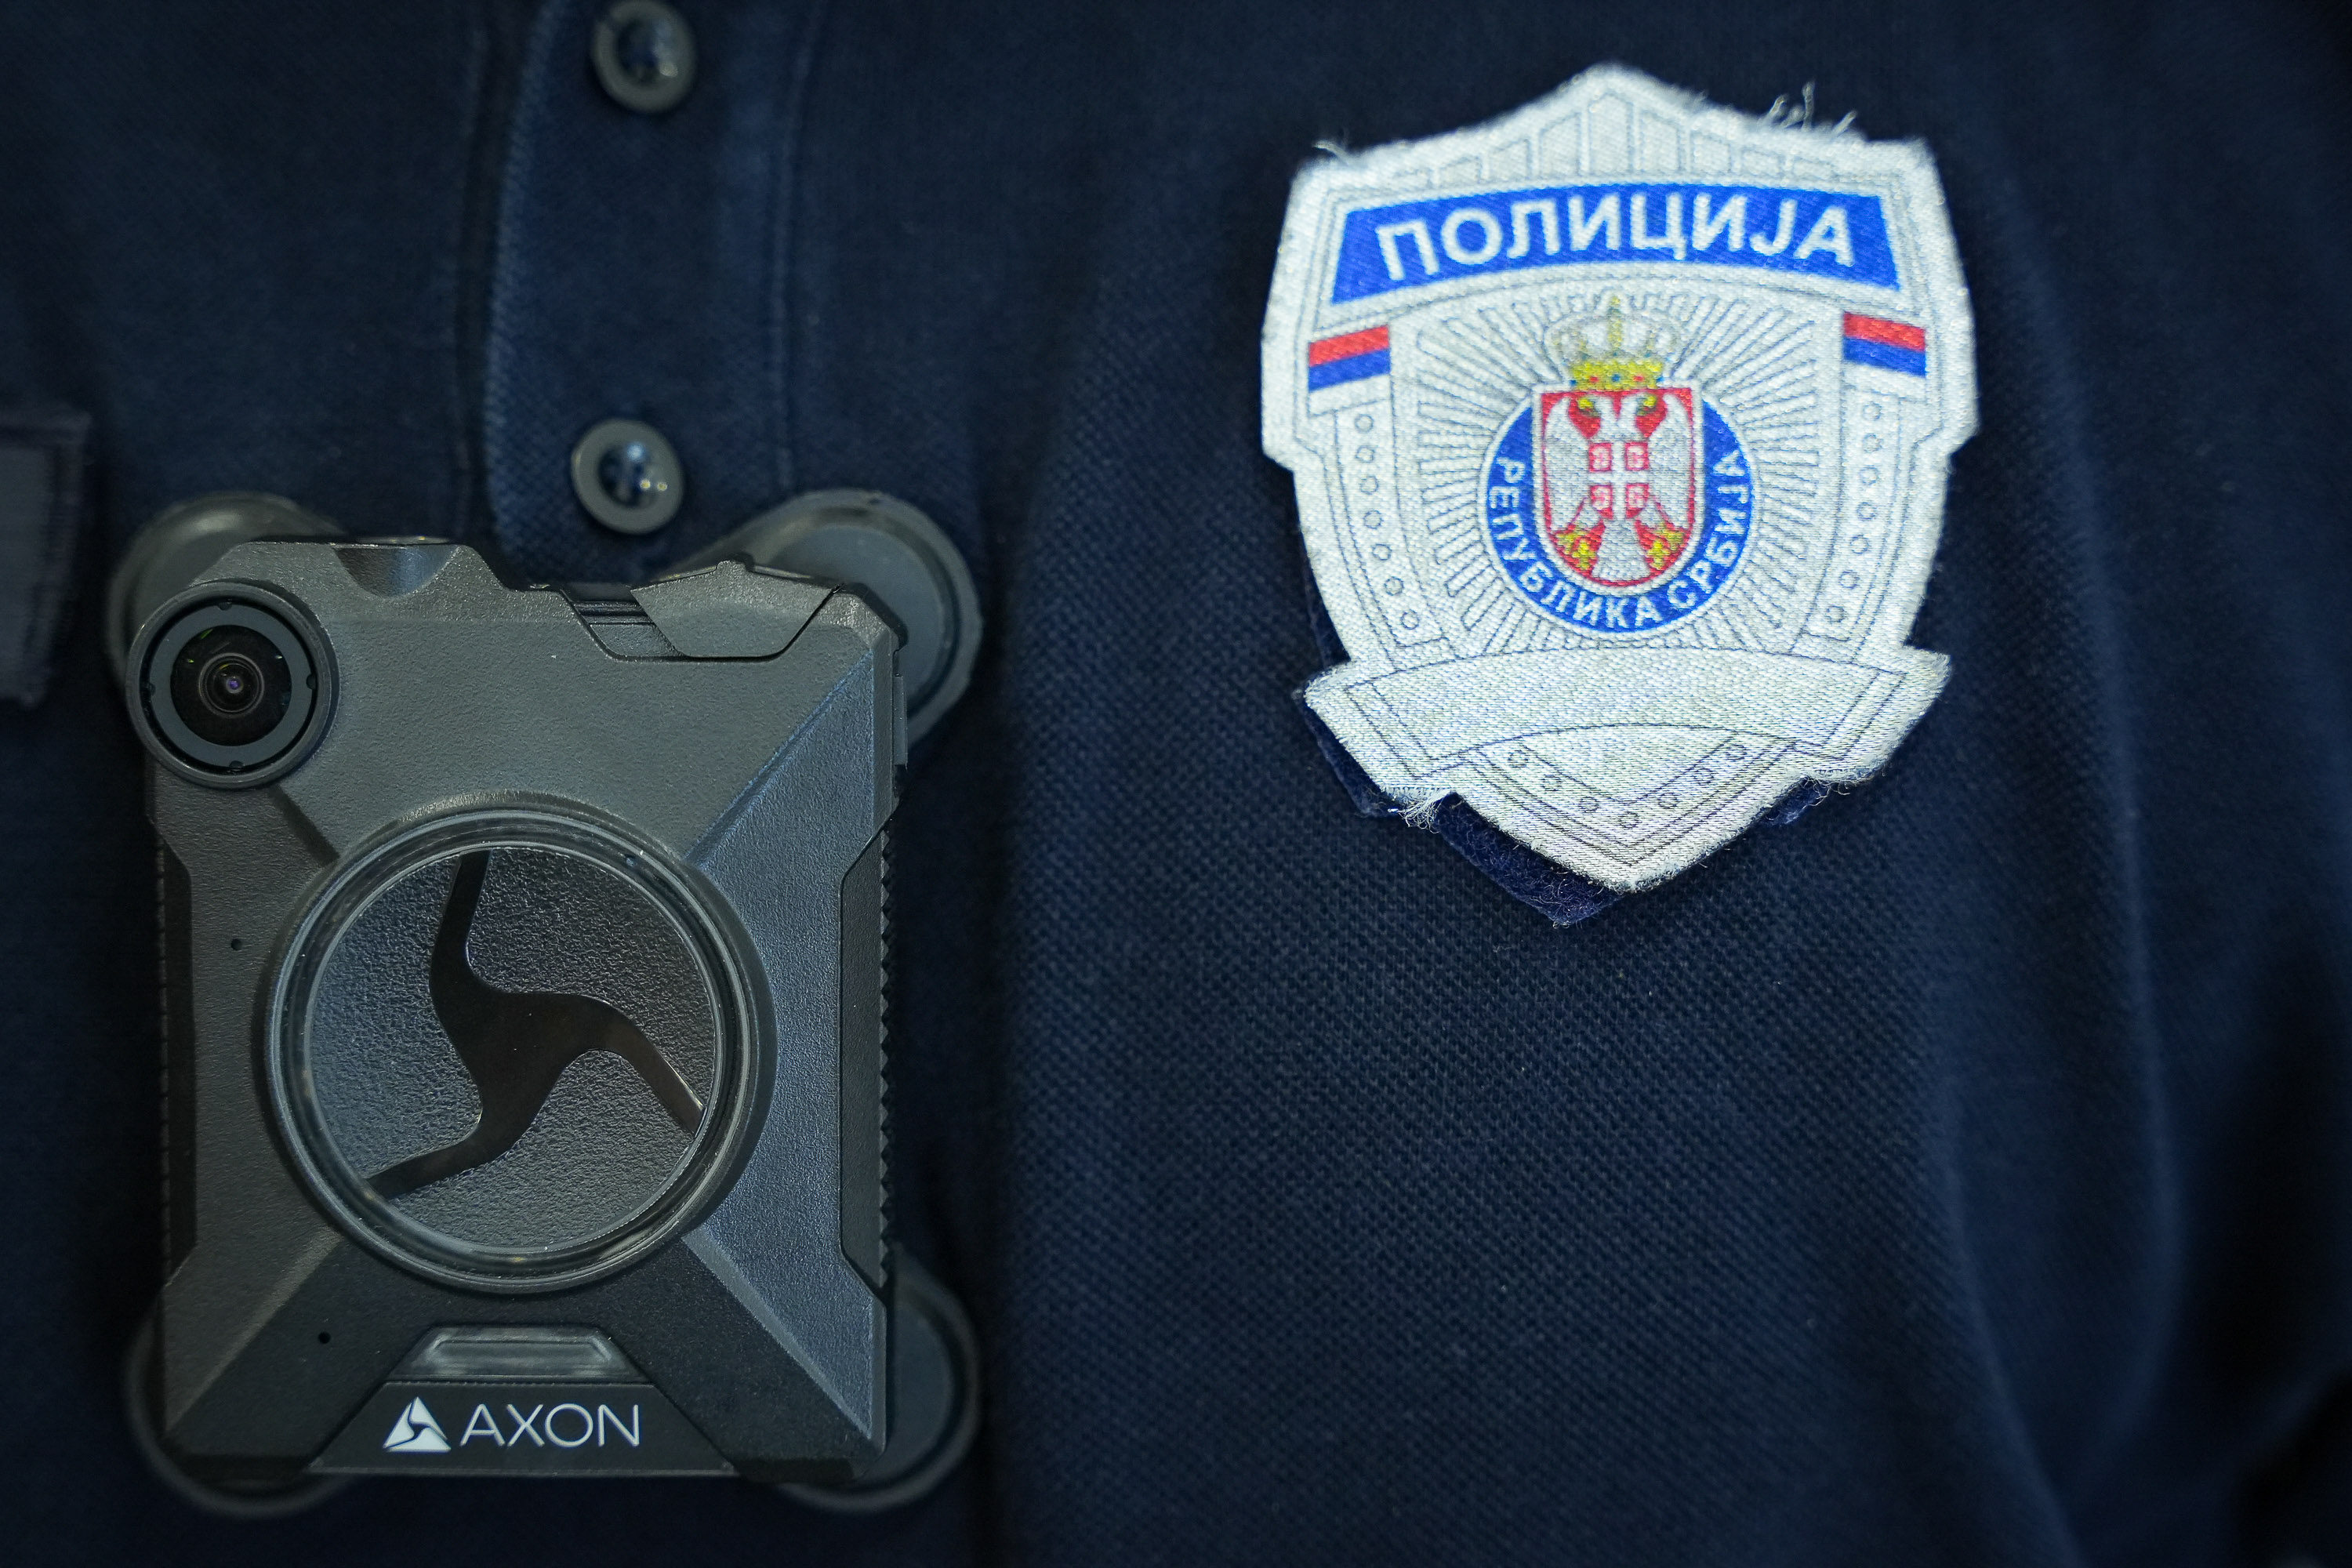 Kamere za uniforme doprineće većoj transparentnosti rada saobraćajne policije